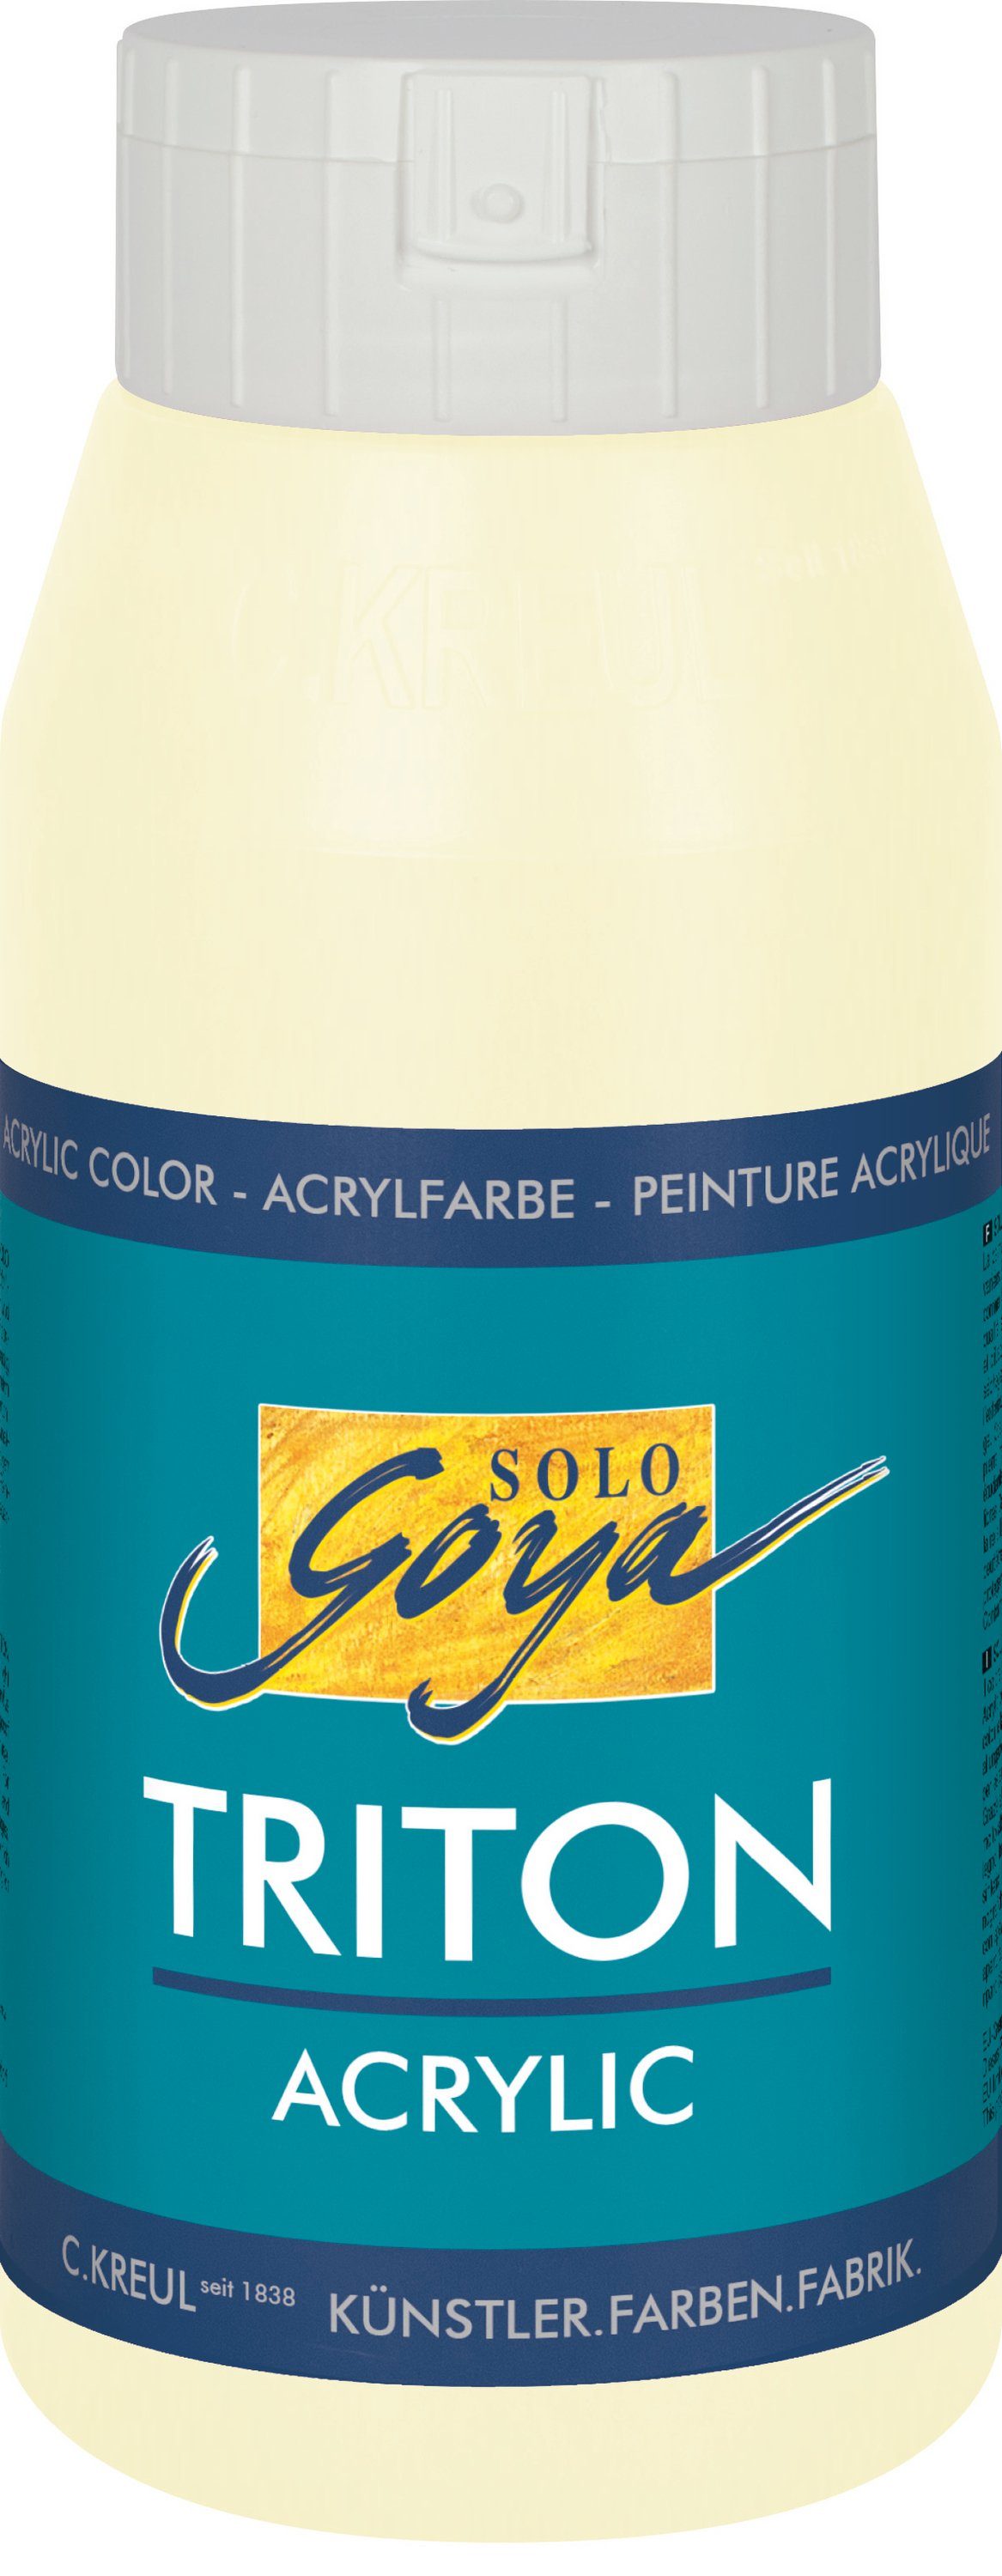 750 ml Goya Kreul Solo Acrylic, Acrylfarbe Elfenbein Triton